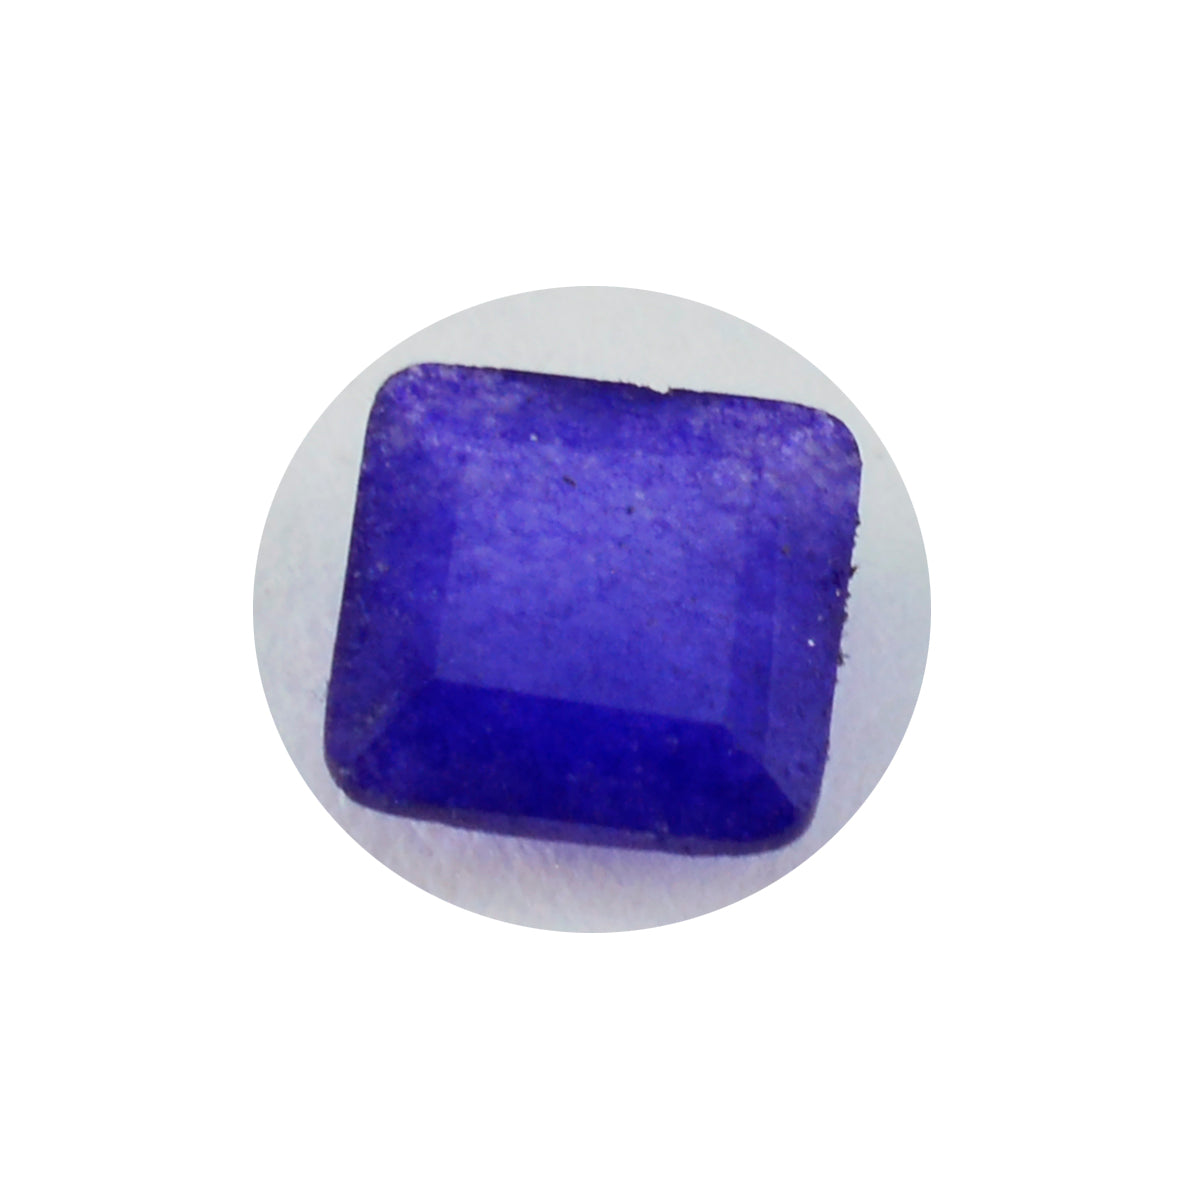 Riyogems 1 pieza jaspe azul Natural facetado 10x10mm forma cuadrada gemas de calidad atractivas